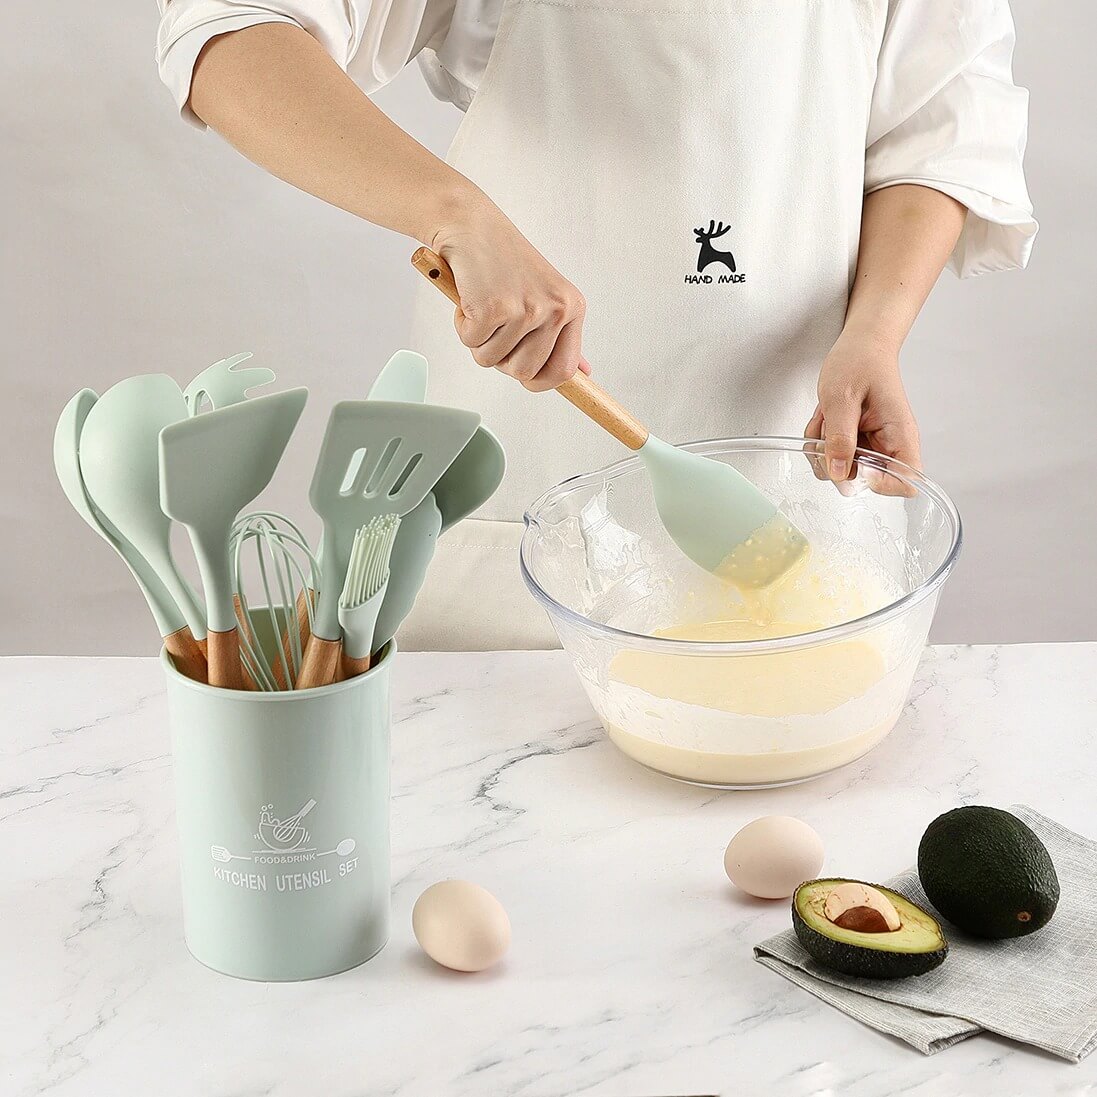 12Pcs Non-Stick Silicone Cooking Utensils Set Heat-Resistant Spatula Spoon  Bbq Clip Beech Handle Soup Ladle Kitchen Gadgets Set